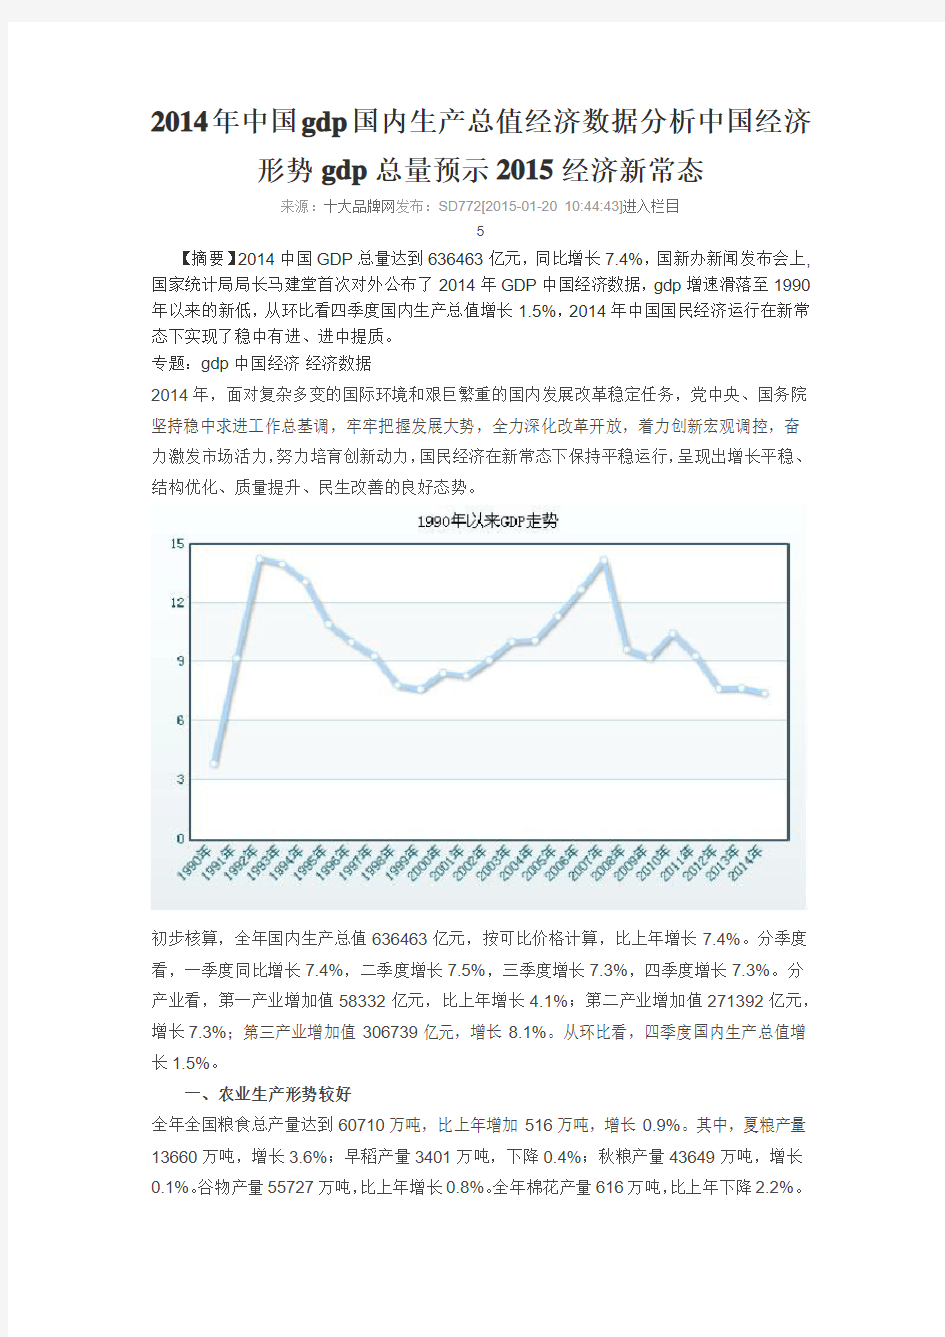 2014年中国gdp国内生产总值经济数据分析 中国经济形势gdp总量预示2015经济新常态